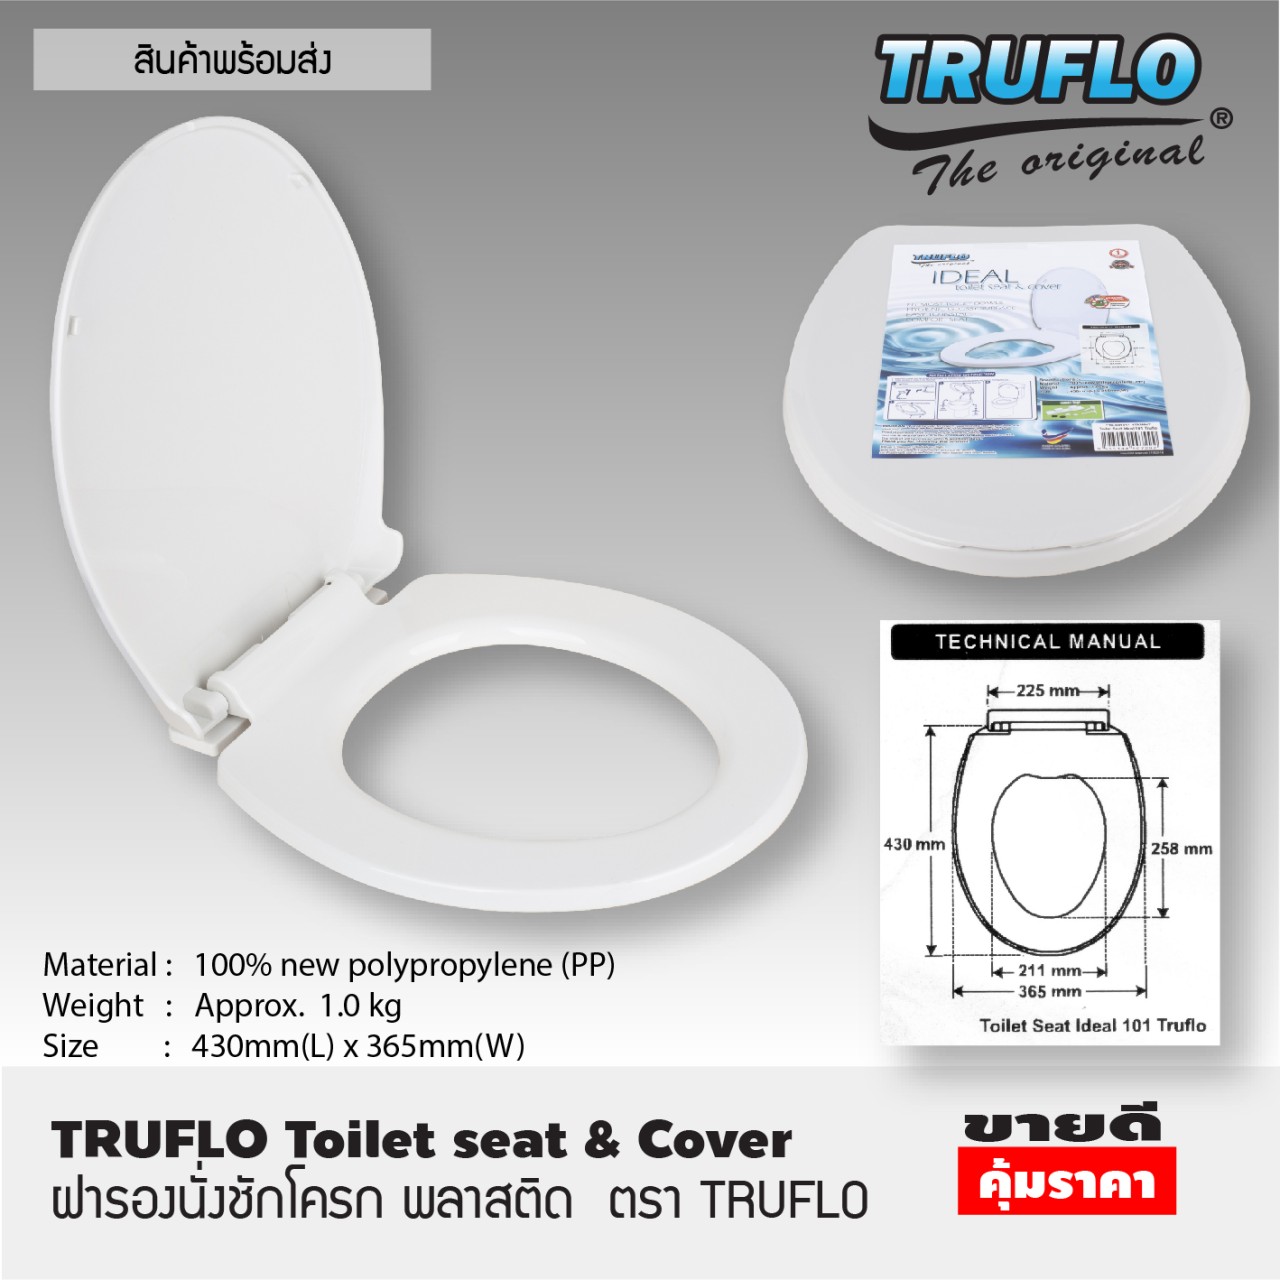 ส่งฟรี TRUFLO Toilet seat cover ฝารองชักโครก พลาสติก (Size 43x36.5cm) ผารองชักโคก ฝารองนั่งส้วม ฝารองนั่ง สีขาว พลาสติกใหม่ 100% Polypropylene สินค้าคุณภาพ T1147